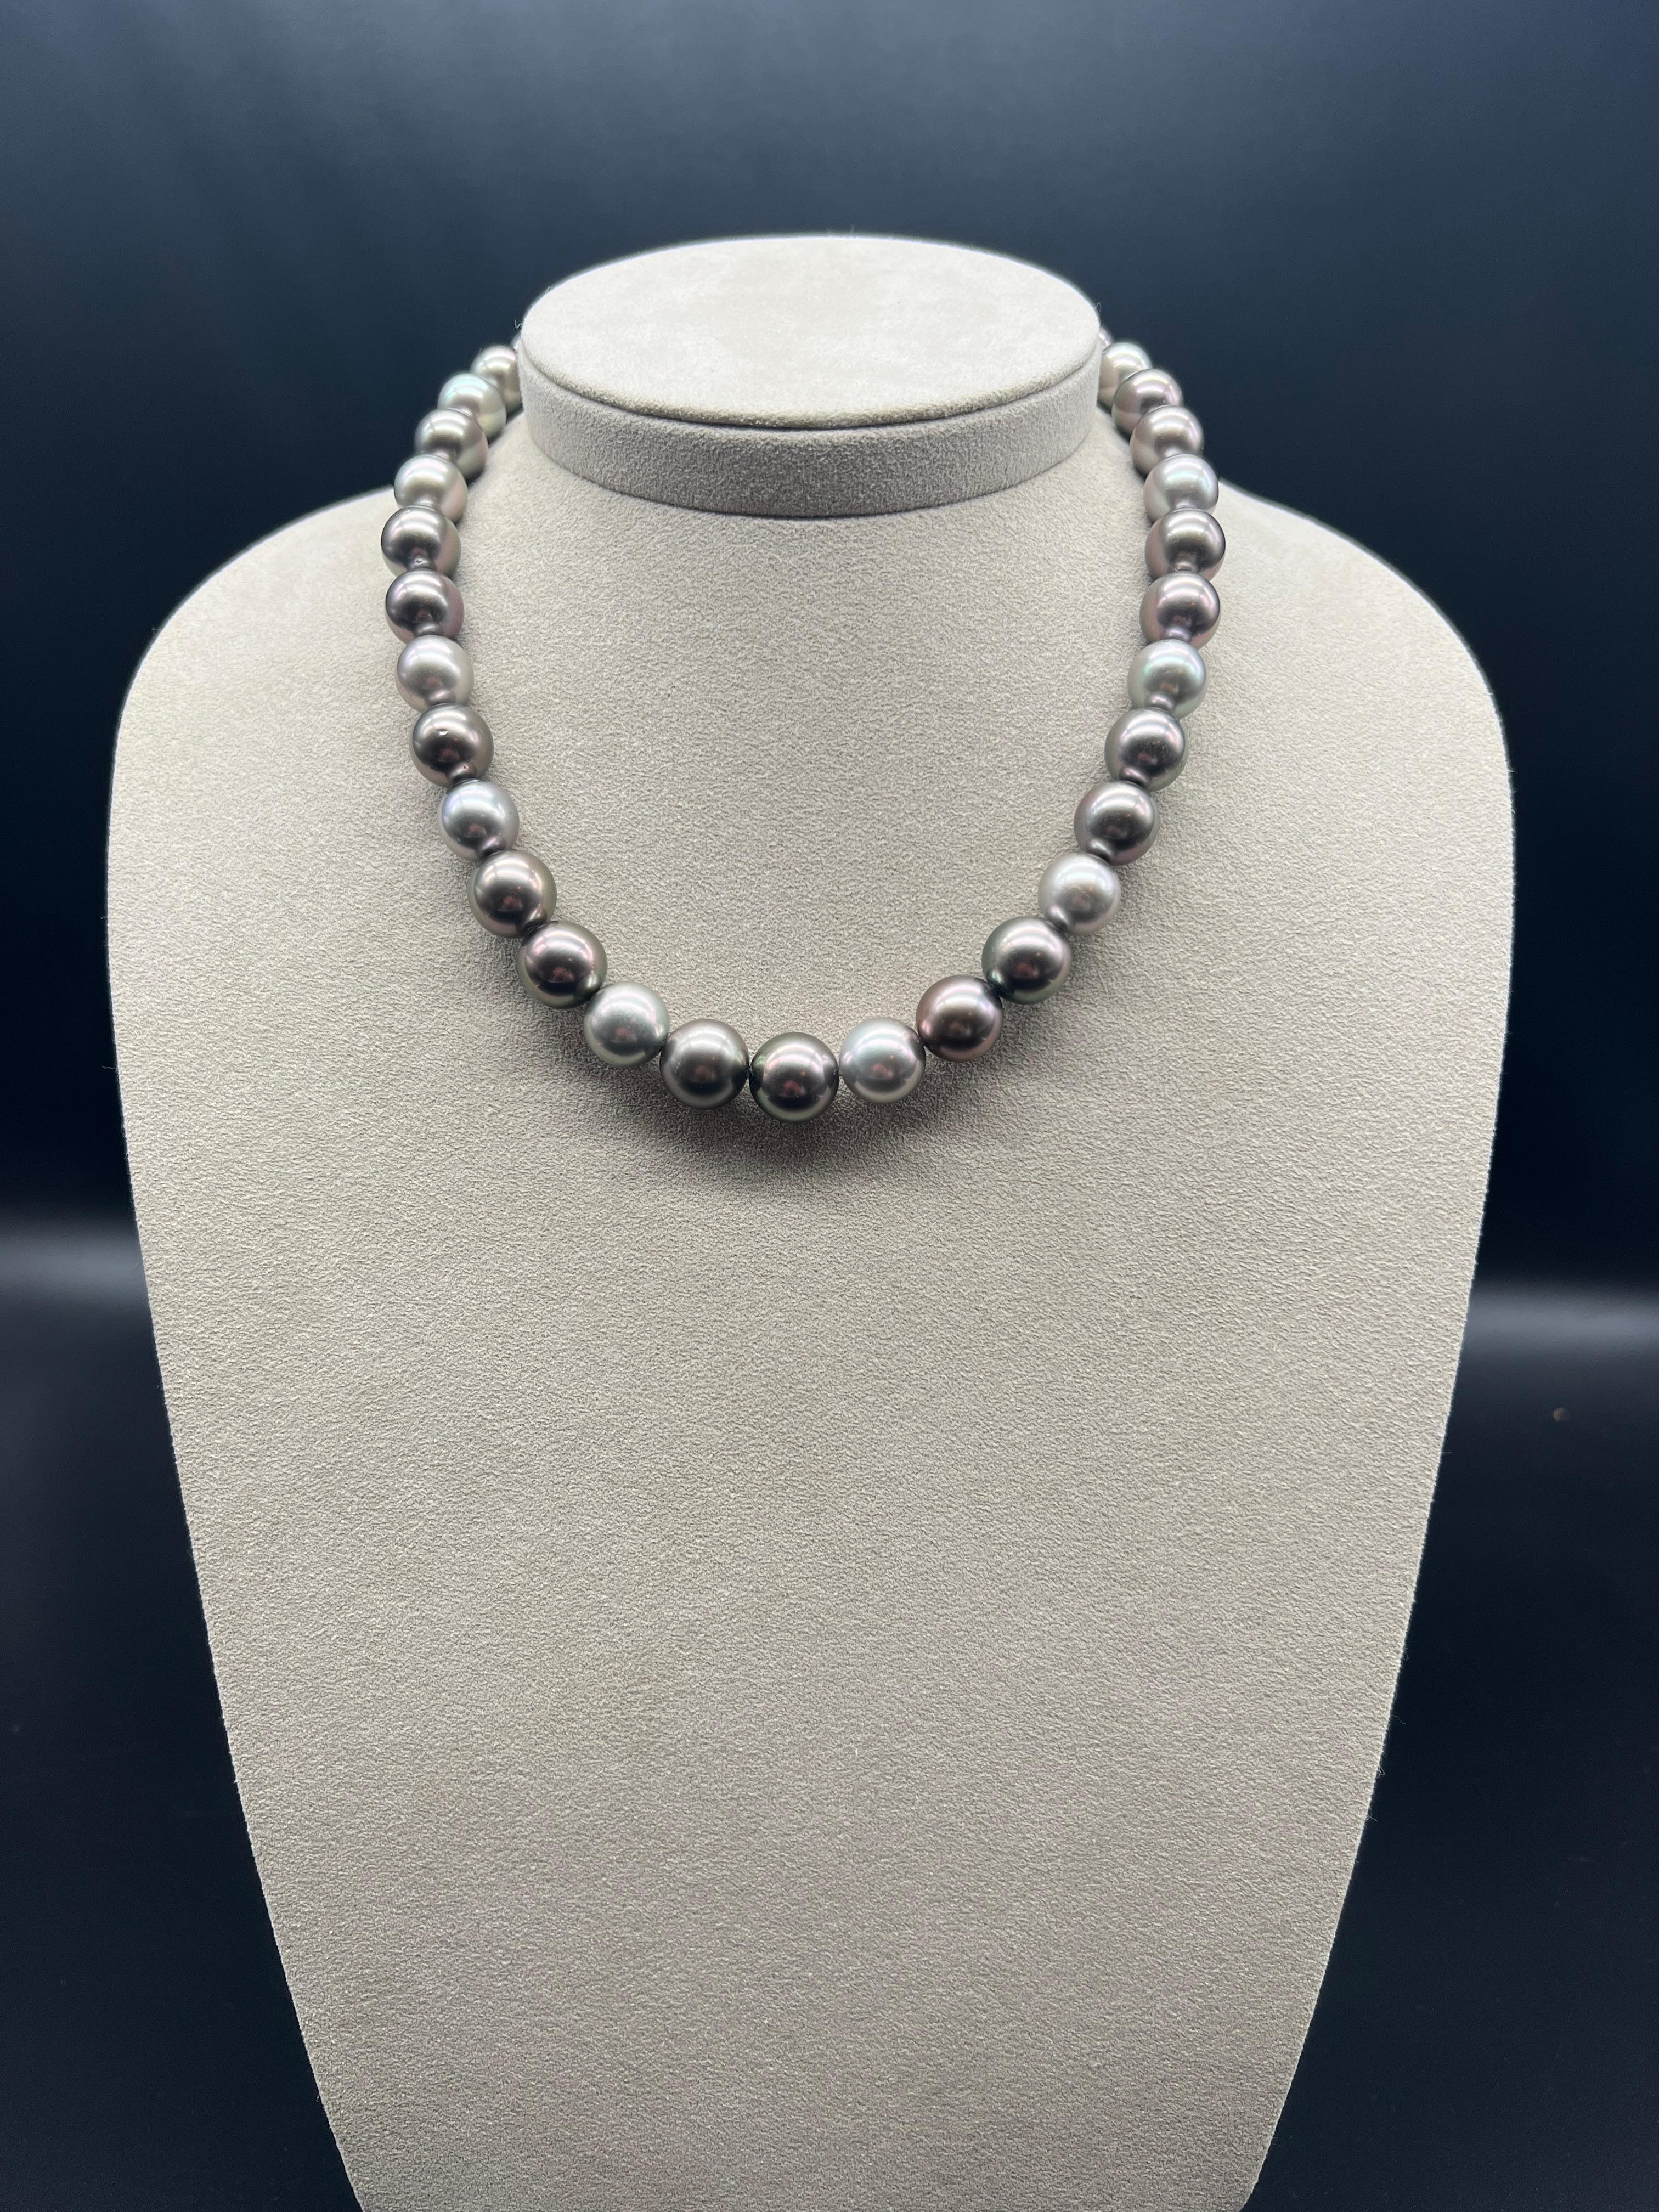 Découvrez le magnifique collier de perles de culture de Tahiti, un bijou d'exception qui incarne l'élégance et la beauté exotique. Composé de 37 perles de culture de Tahiti, ce collier vous séduira par sa sophistication et son raffinement.

Chaque